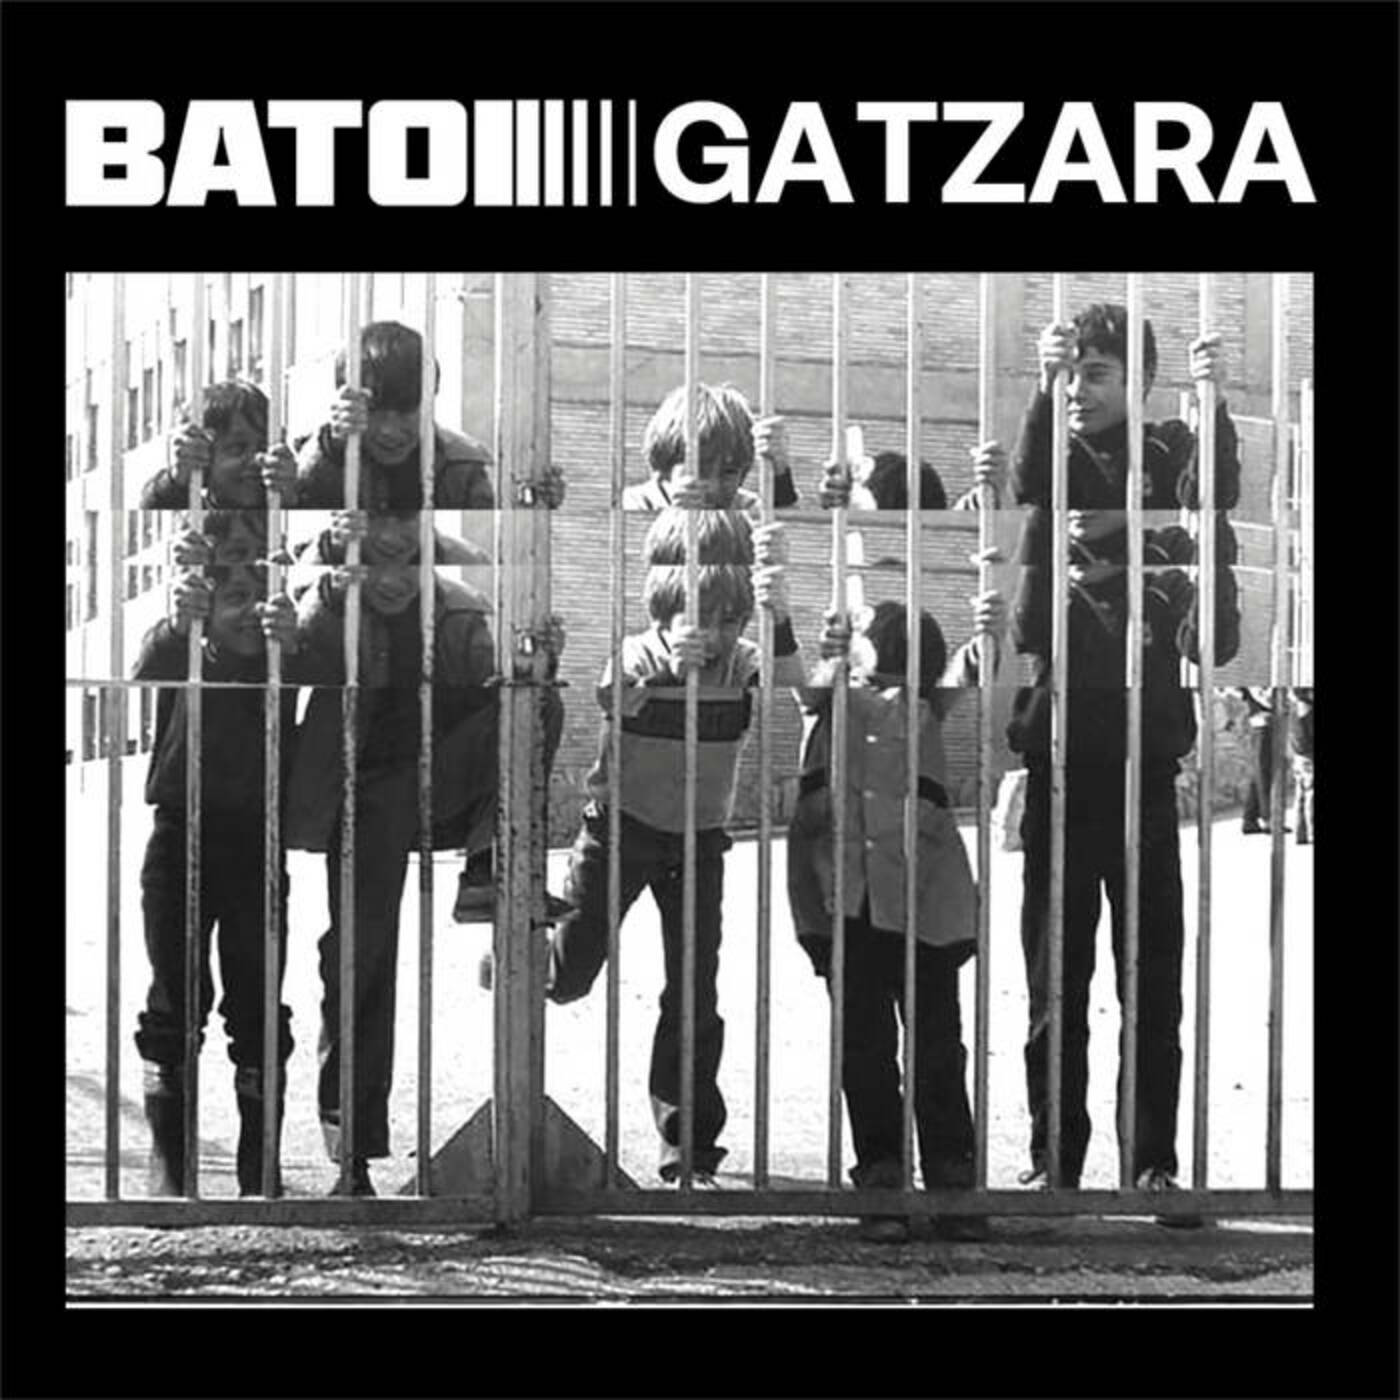 Batoi - Gatzara | musica en valencià